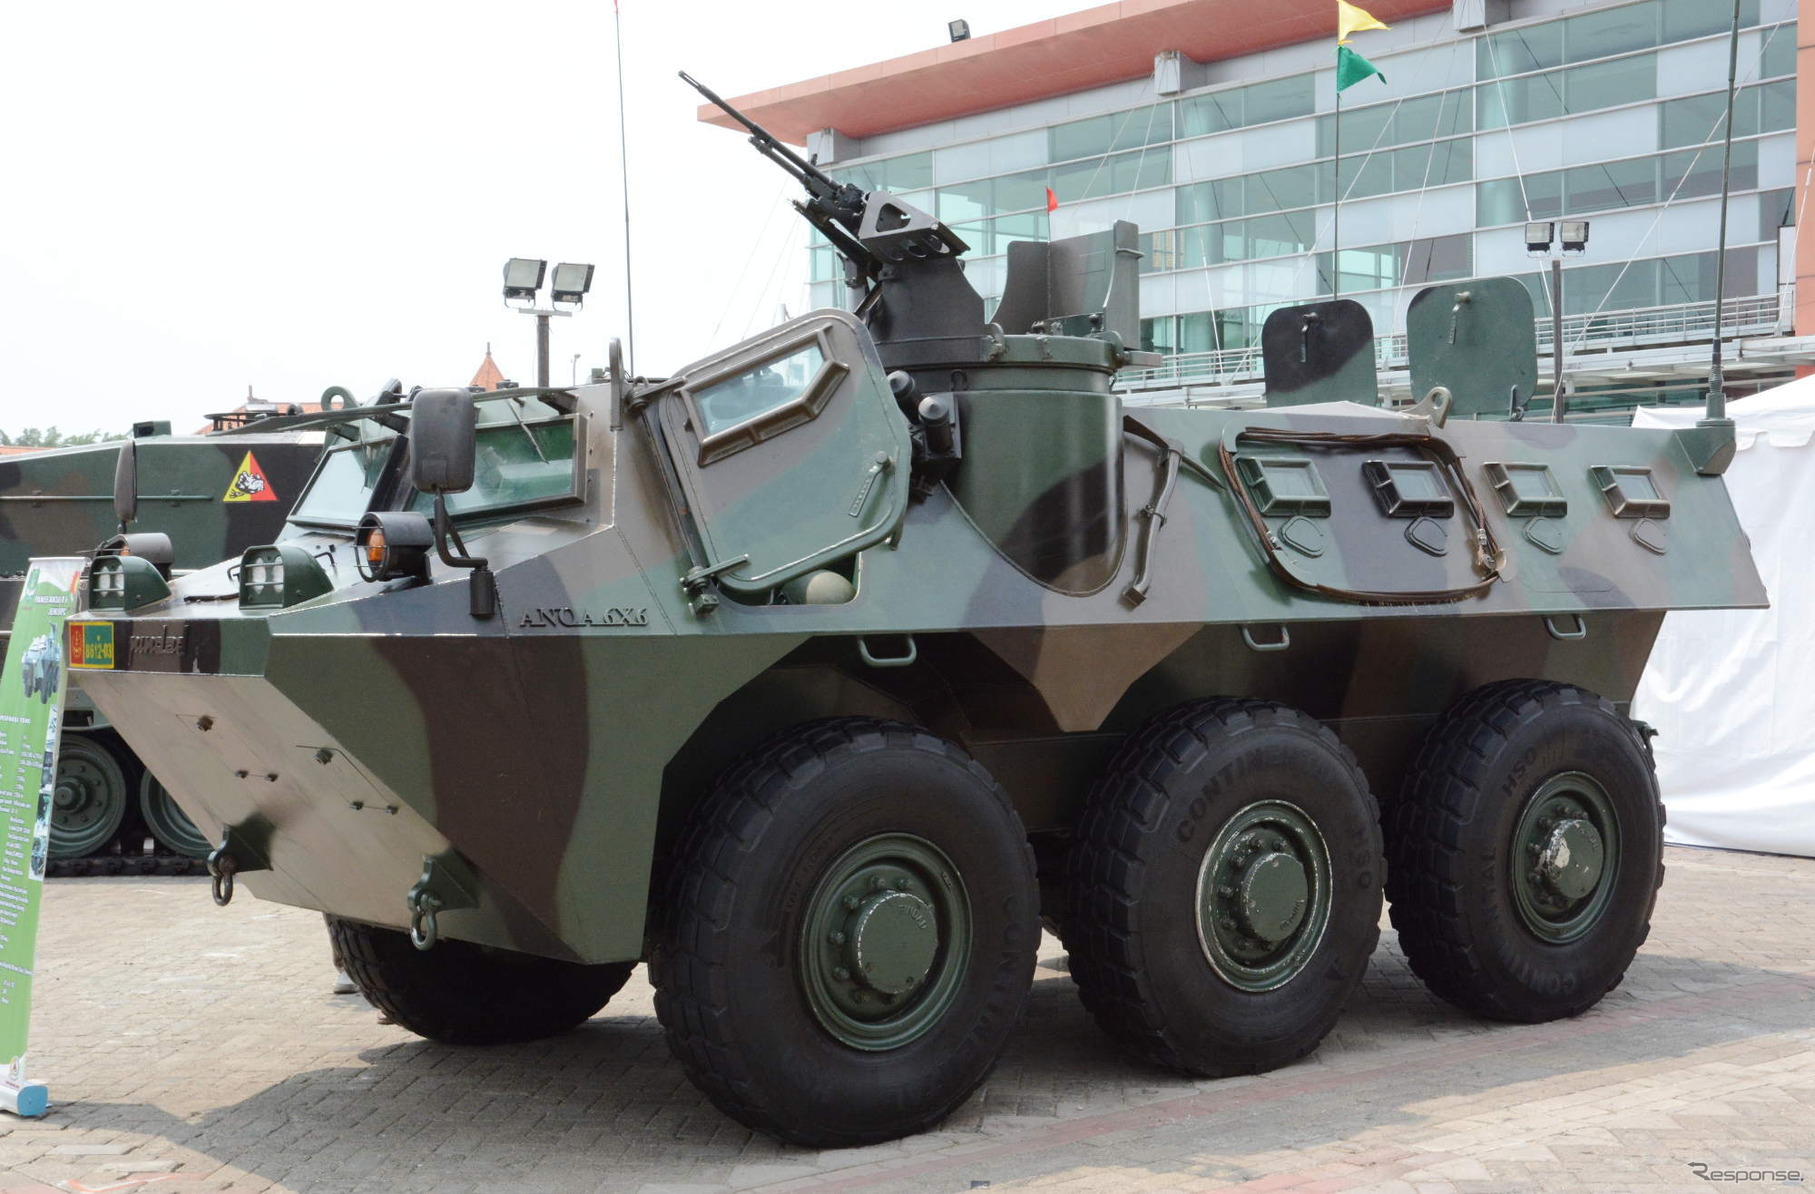 インドネシア国産の装輪装甲車「APS-3 アノア」